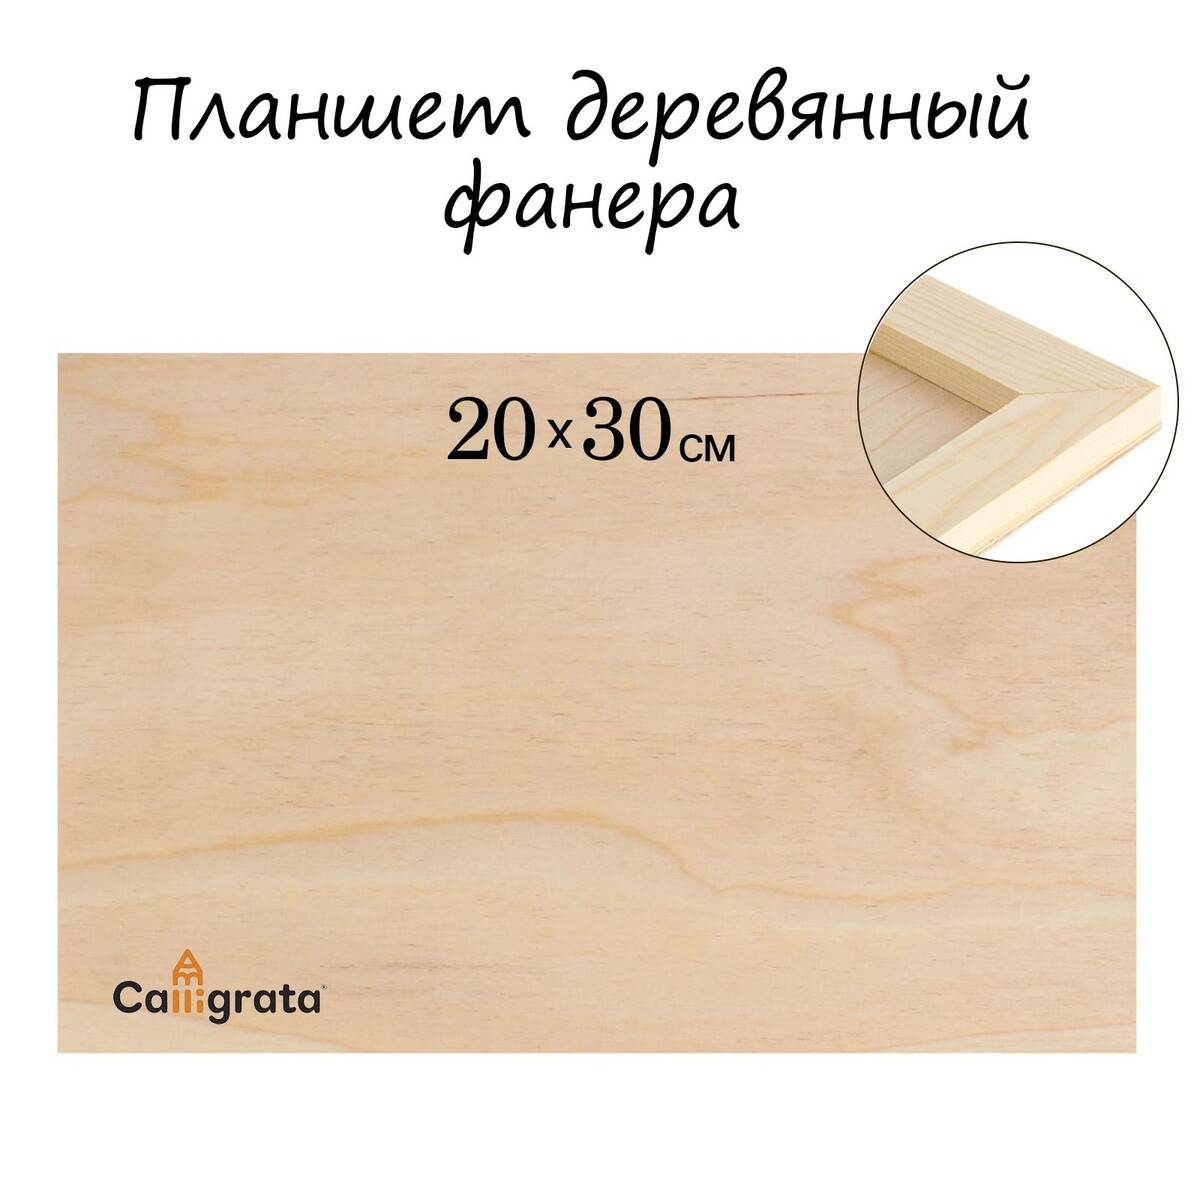 Планшет деревянный 20 х 30 х 2 см, фанера планшет круглый деревянный фанера d 30 х 2 см сосна calligrata